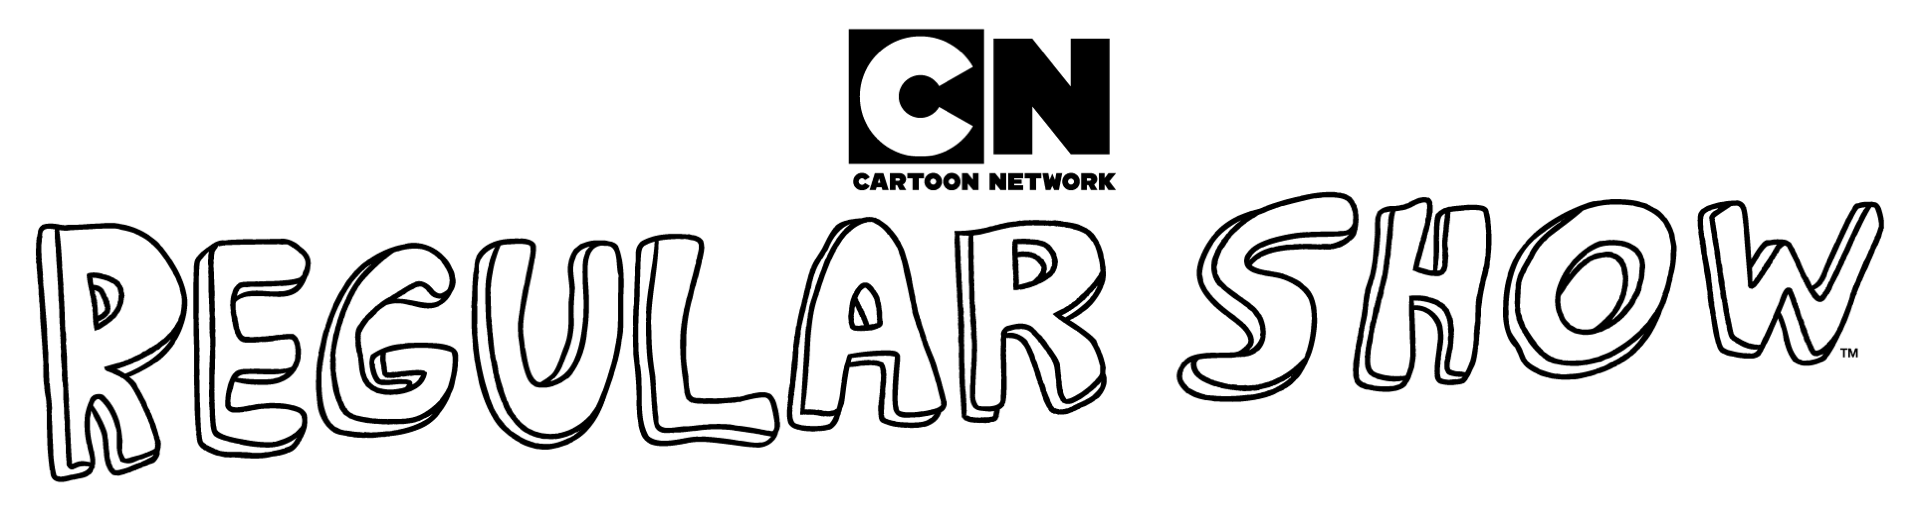 Cartoon Network Games: Regular Show - Dimensional Drift #1 